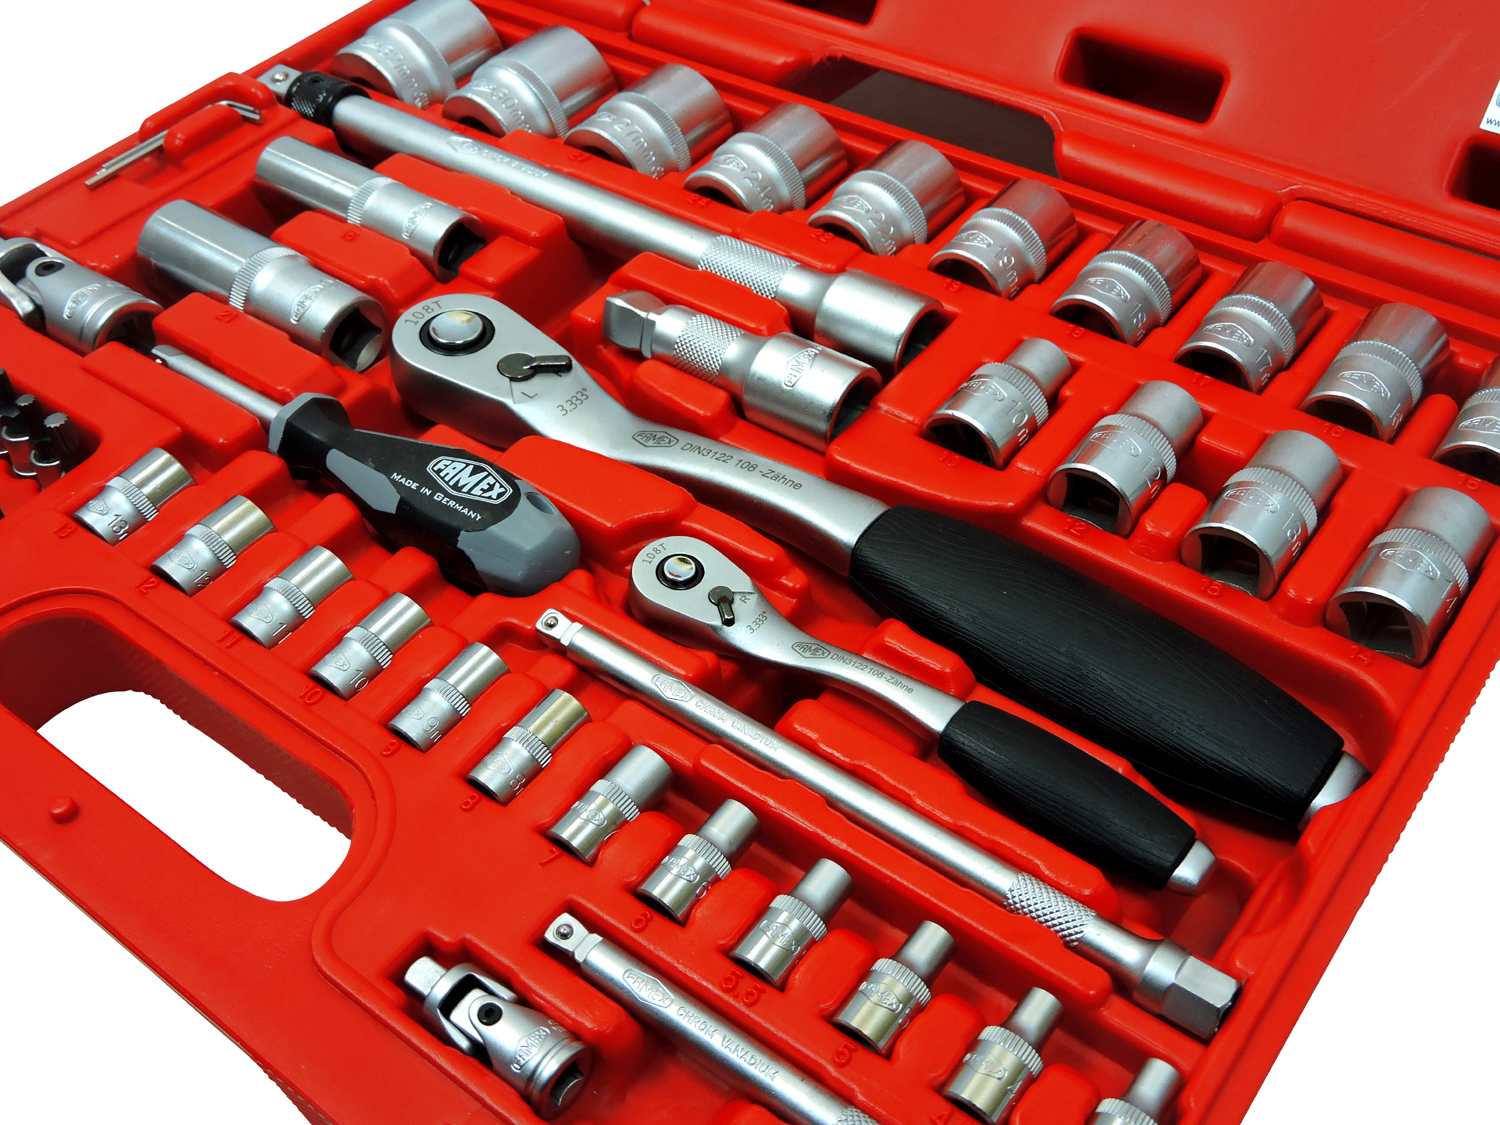 Werkzeuge günstig online kaufen - FAMEX 728-14 Werkzeugkoffer Komplettset  High-End Qualität, mit 66-teiligem Steckschlüsselsatz | Werkzeug-Sets